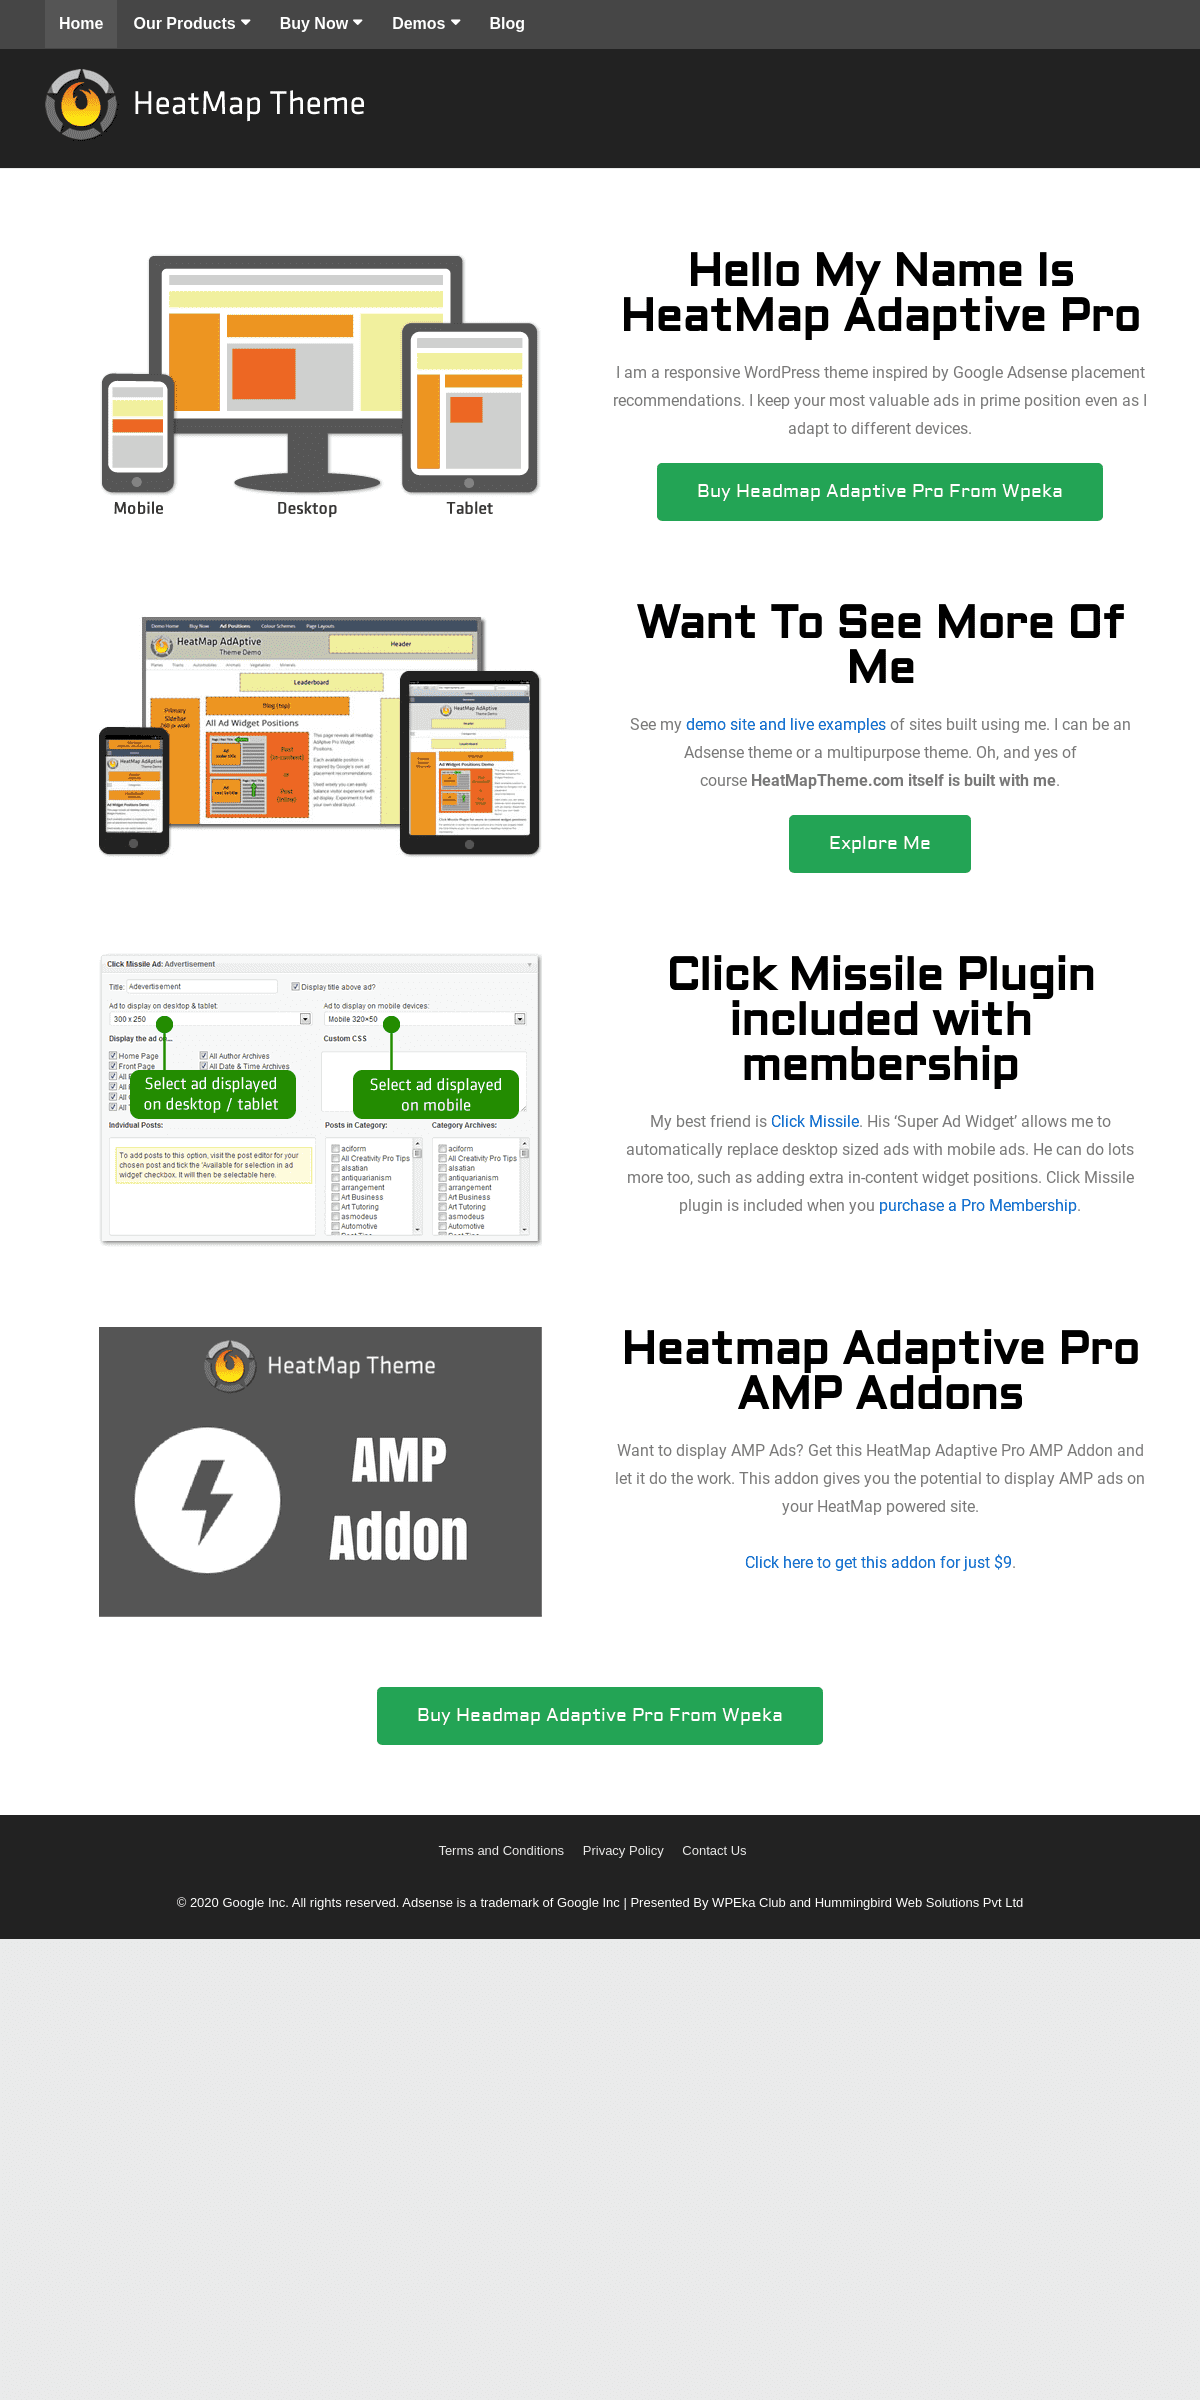 A complete backup of heatmaptheme.com